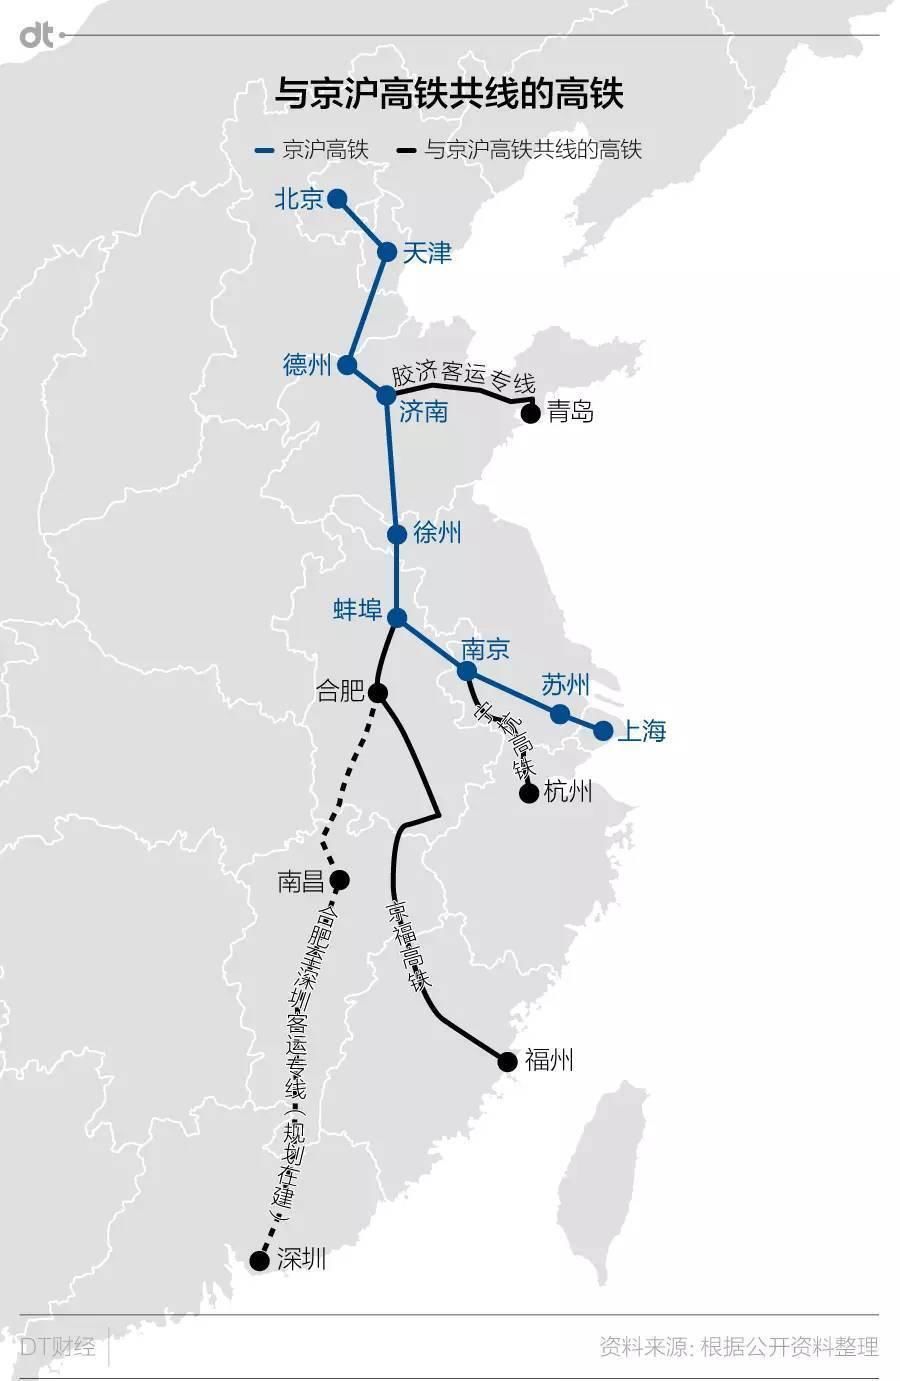 听到京台高铁,多数人的第一印象可能就是从北京到台州的高速铁路,但